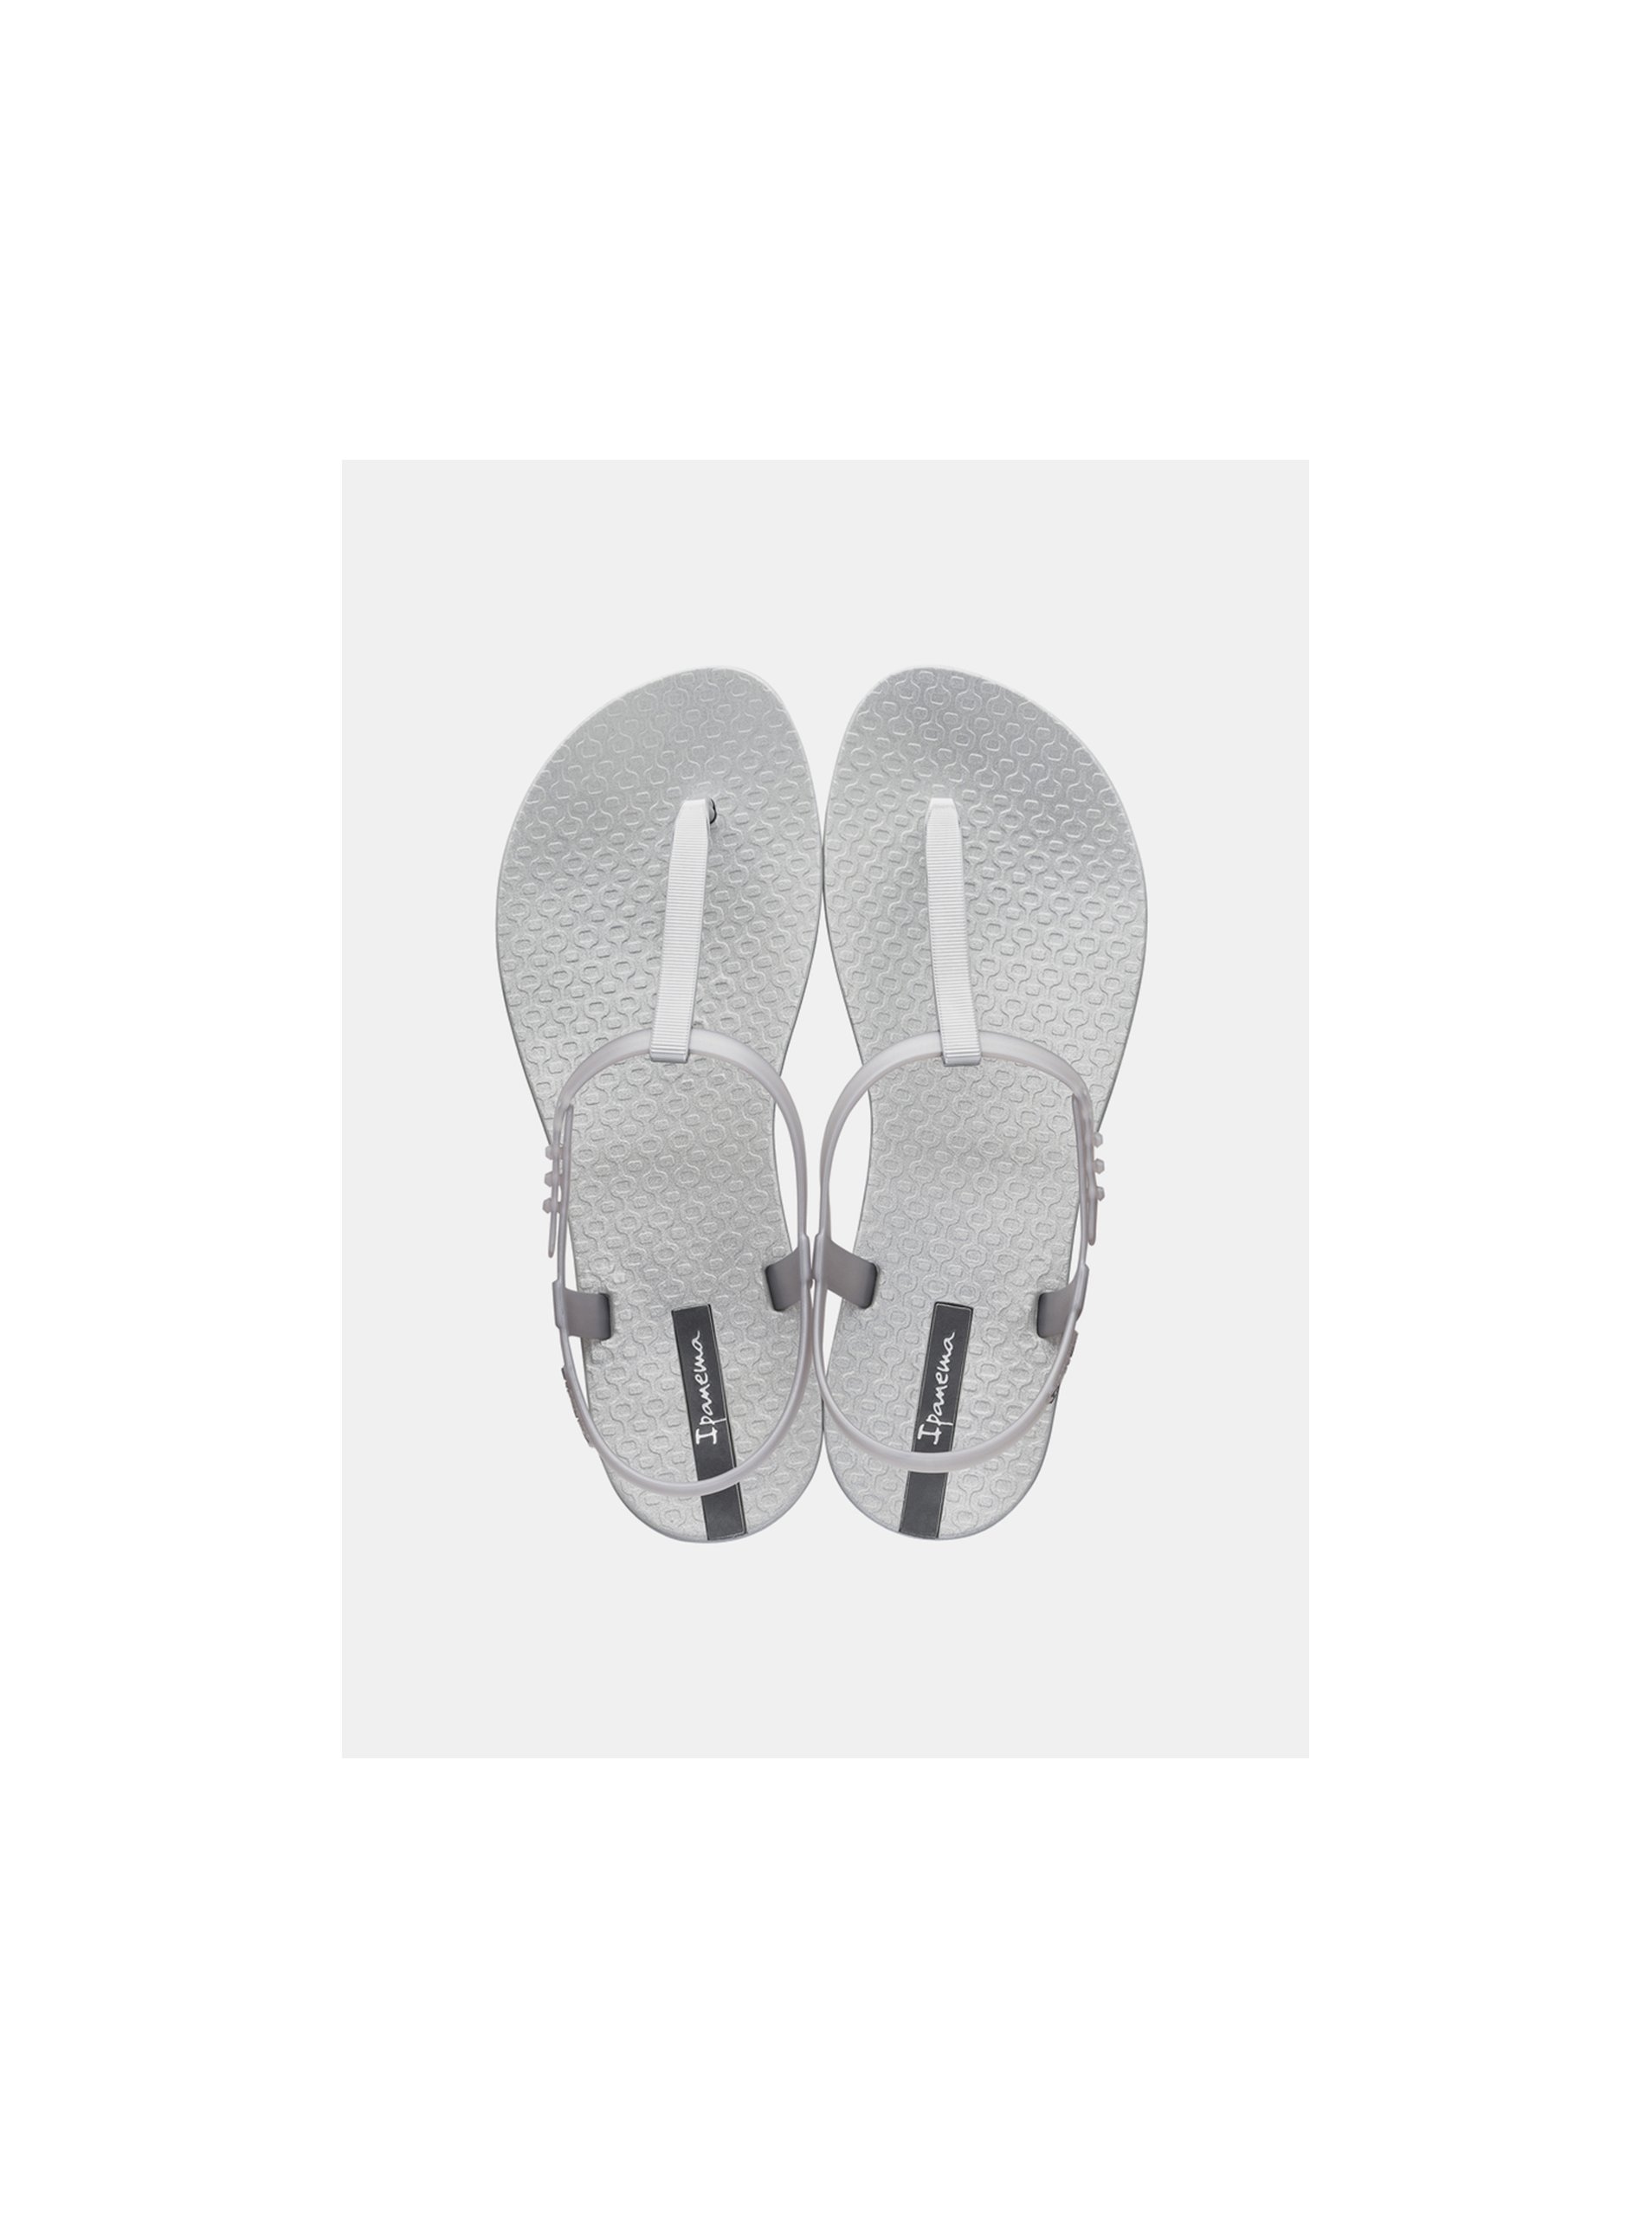 Lacno Metalické sandálky v striebornej farbe Ipanema Class Exclusive